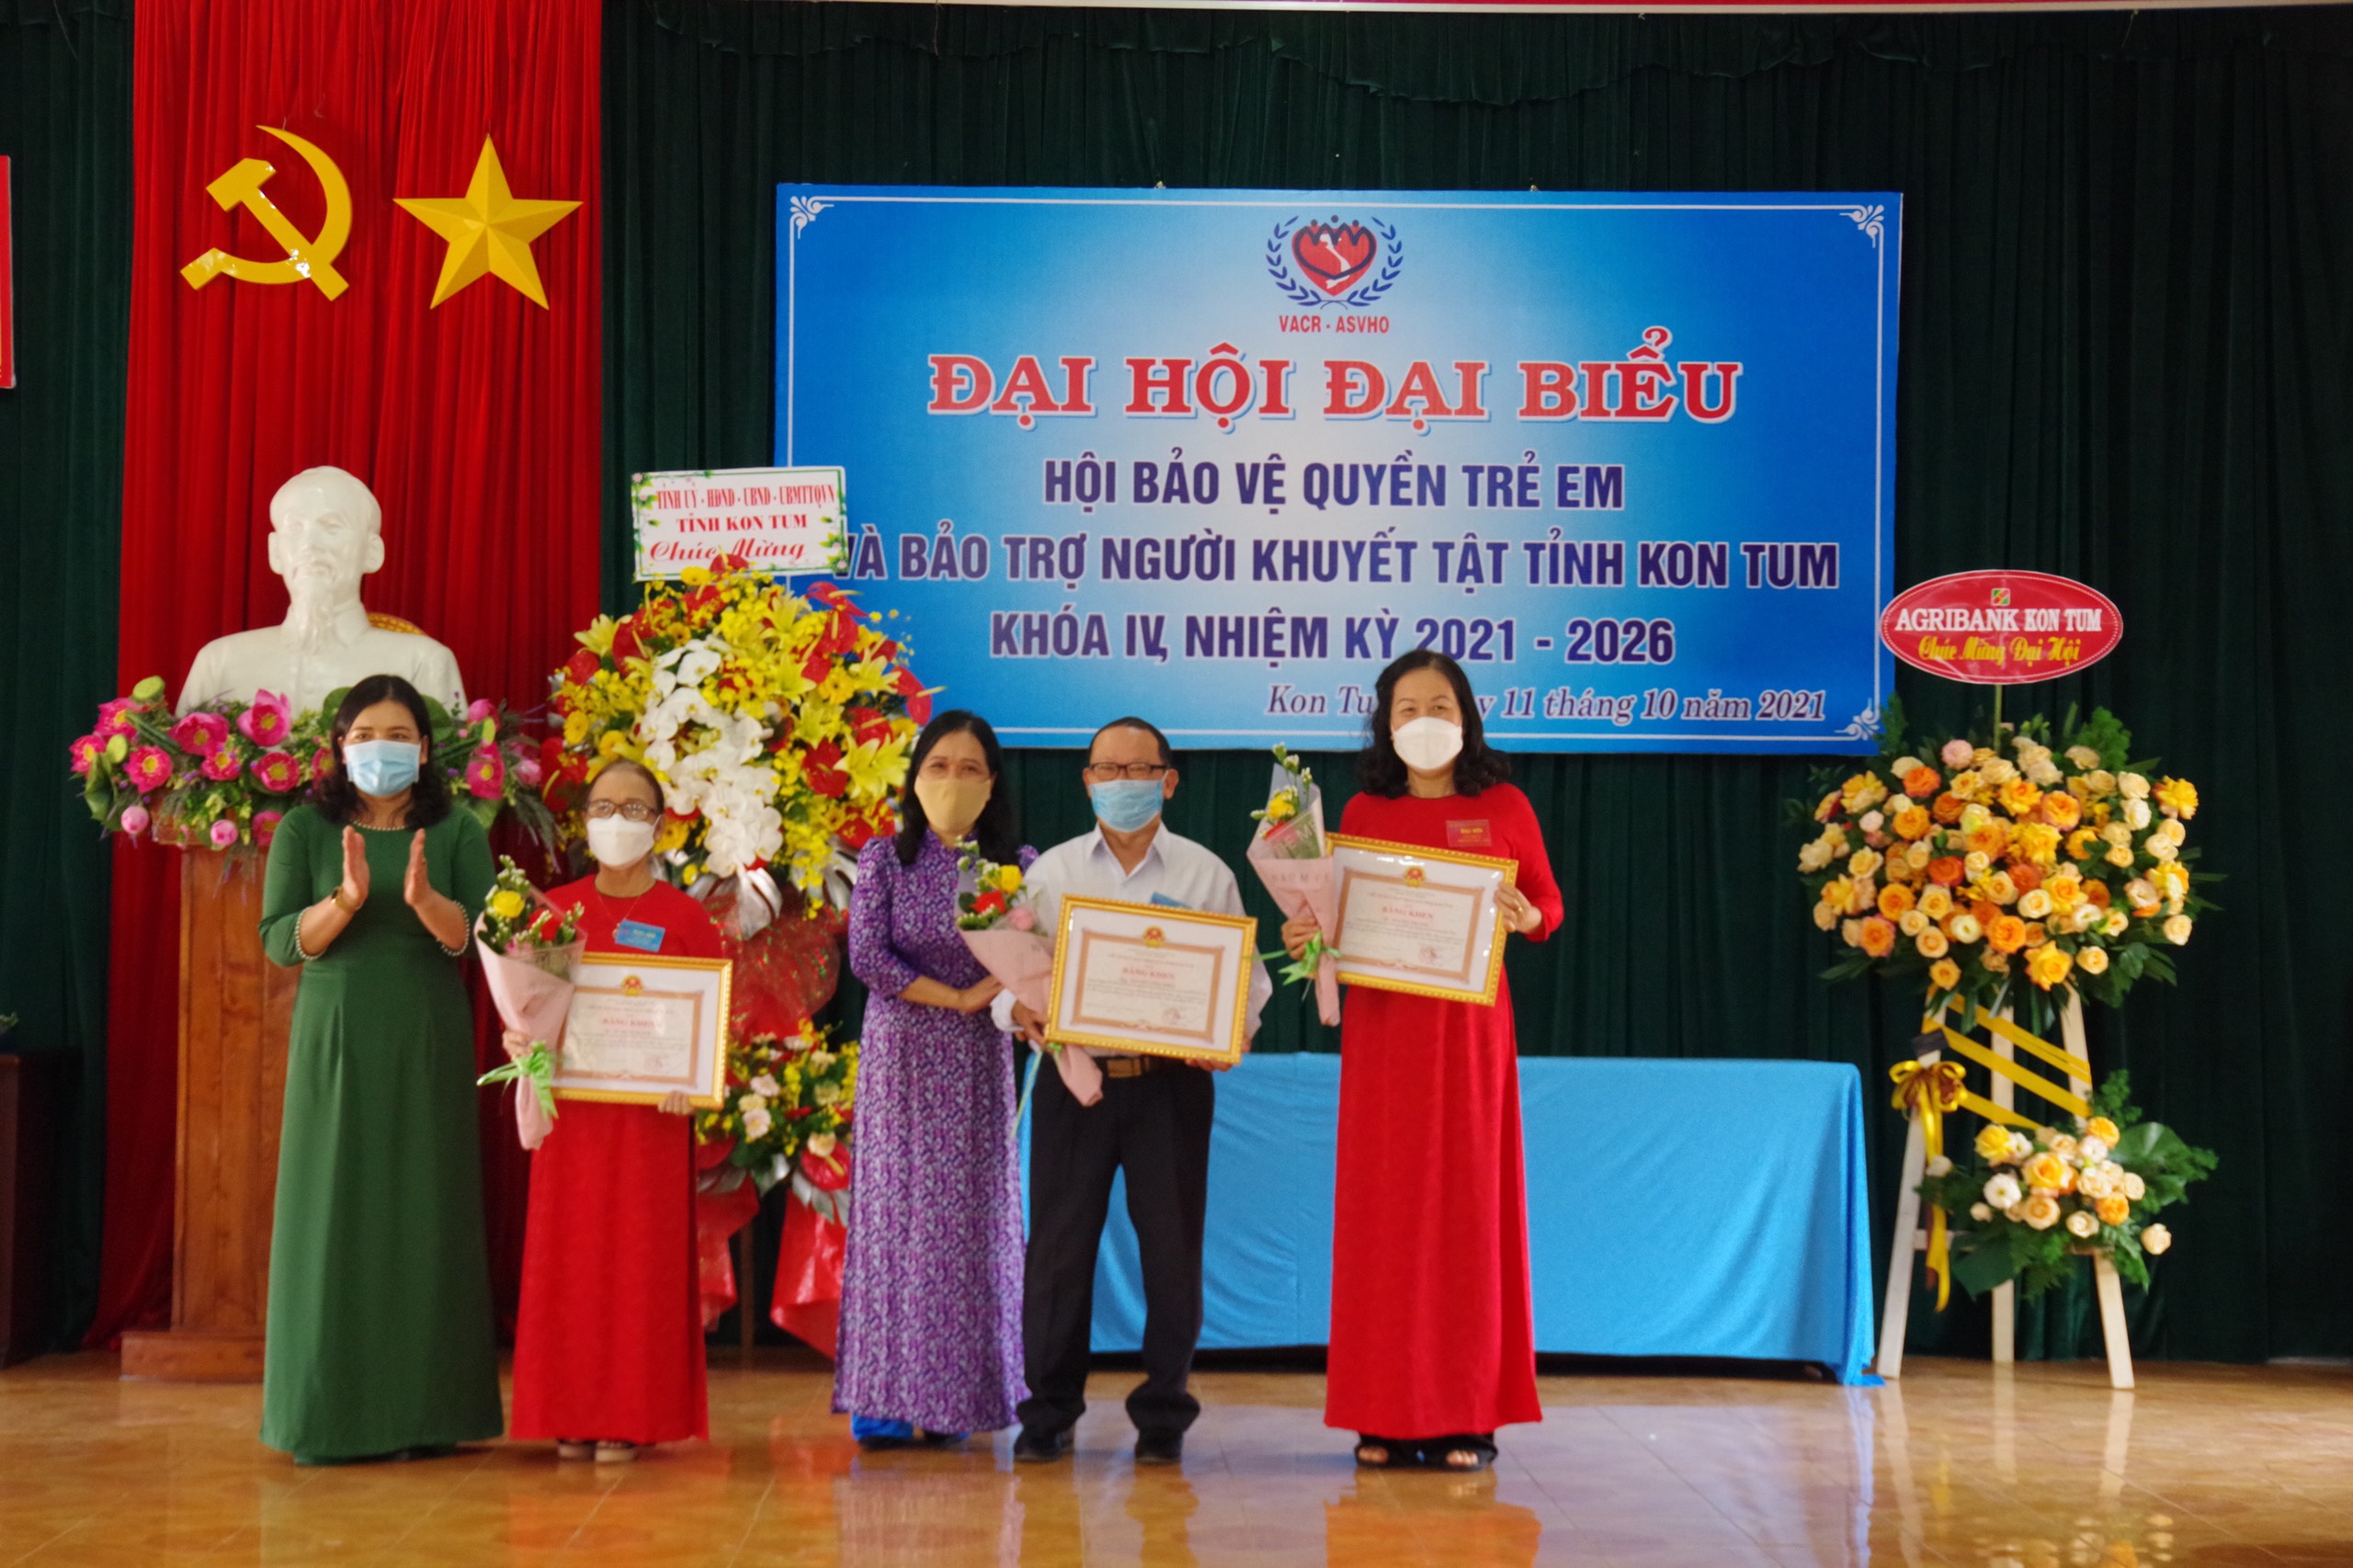 Đại hội đại biểu Hội Bảo vệ quyền trẻ em và Bảo trợ người khuyết tật tỉnh Kon Tum lần thứ IV